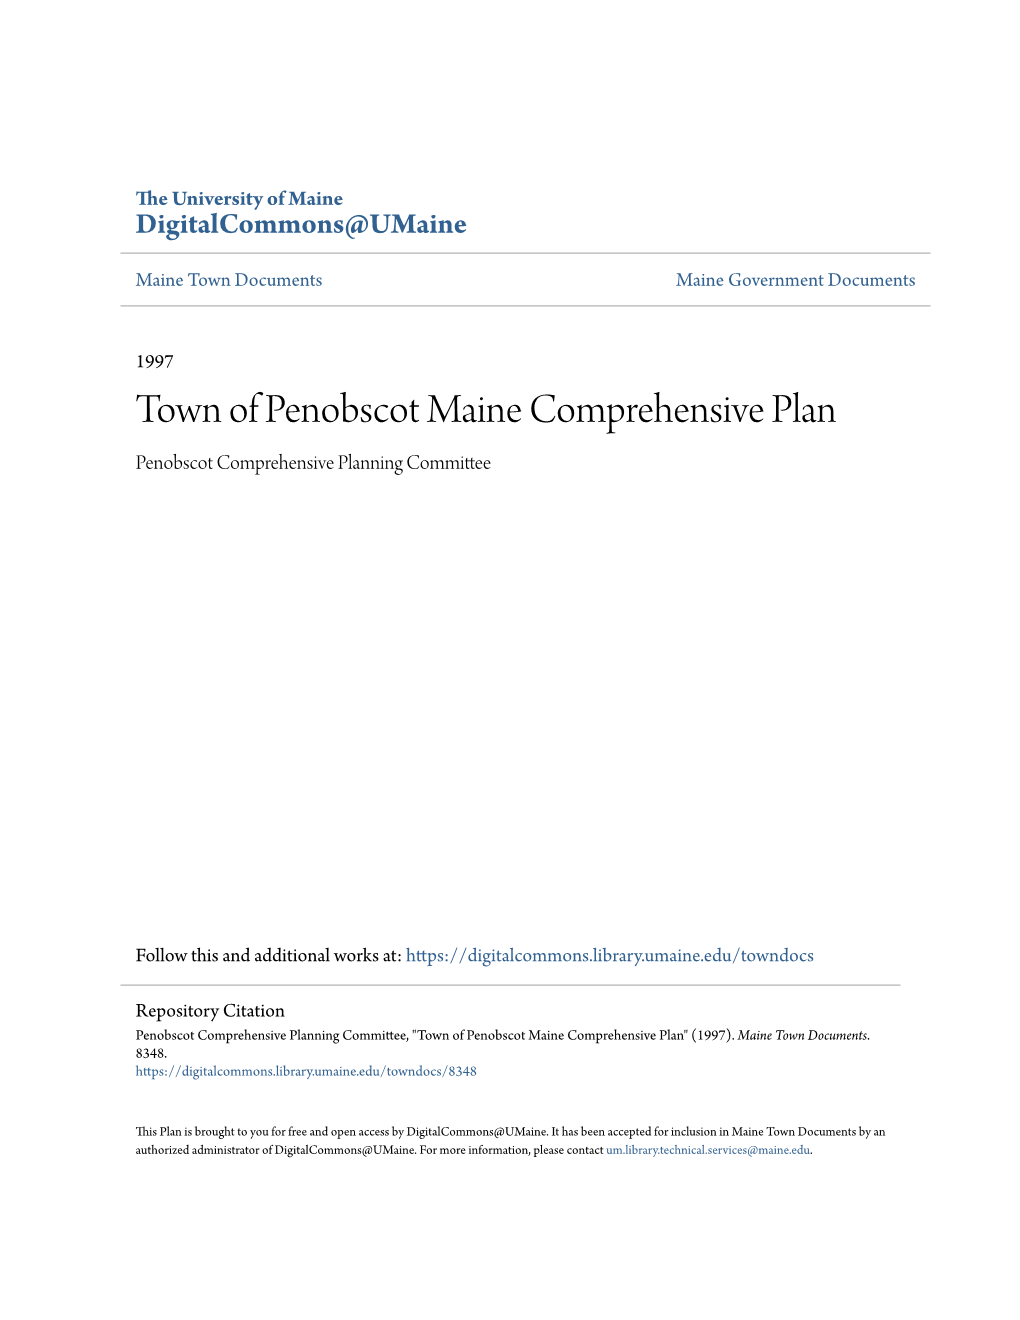 Town of Penobscot Maine Comprehensive Plan Penobscot Comprehensive Planning Committee